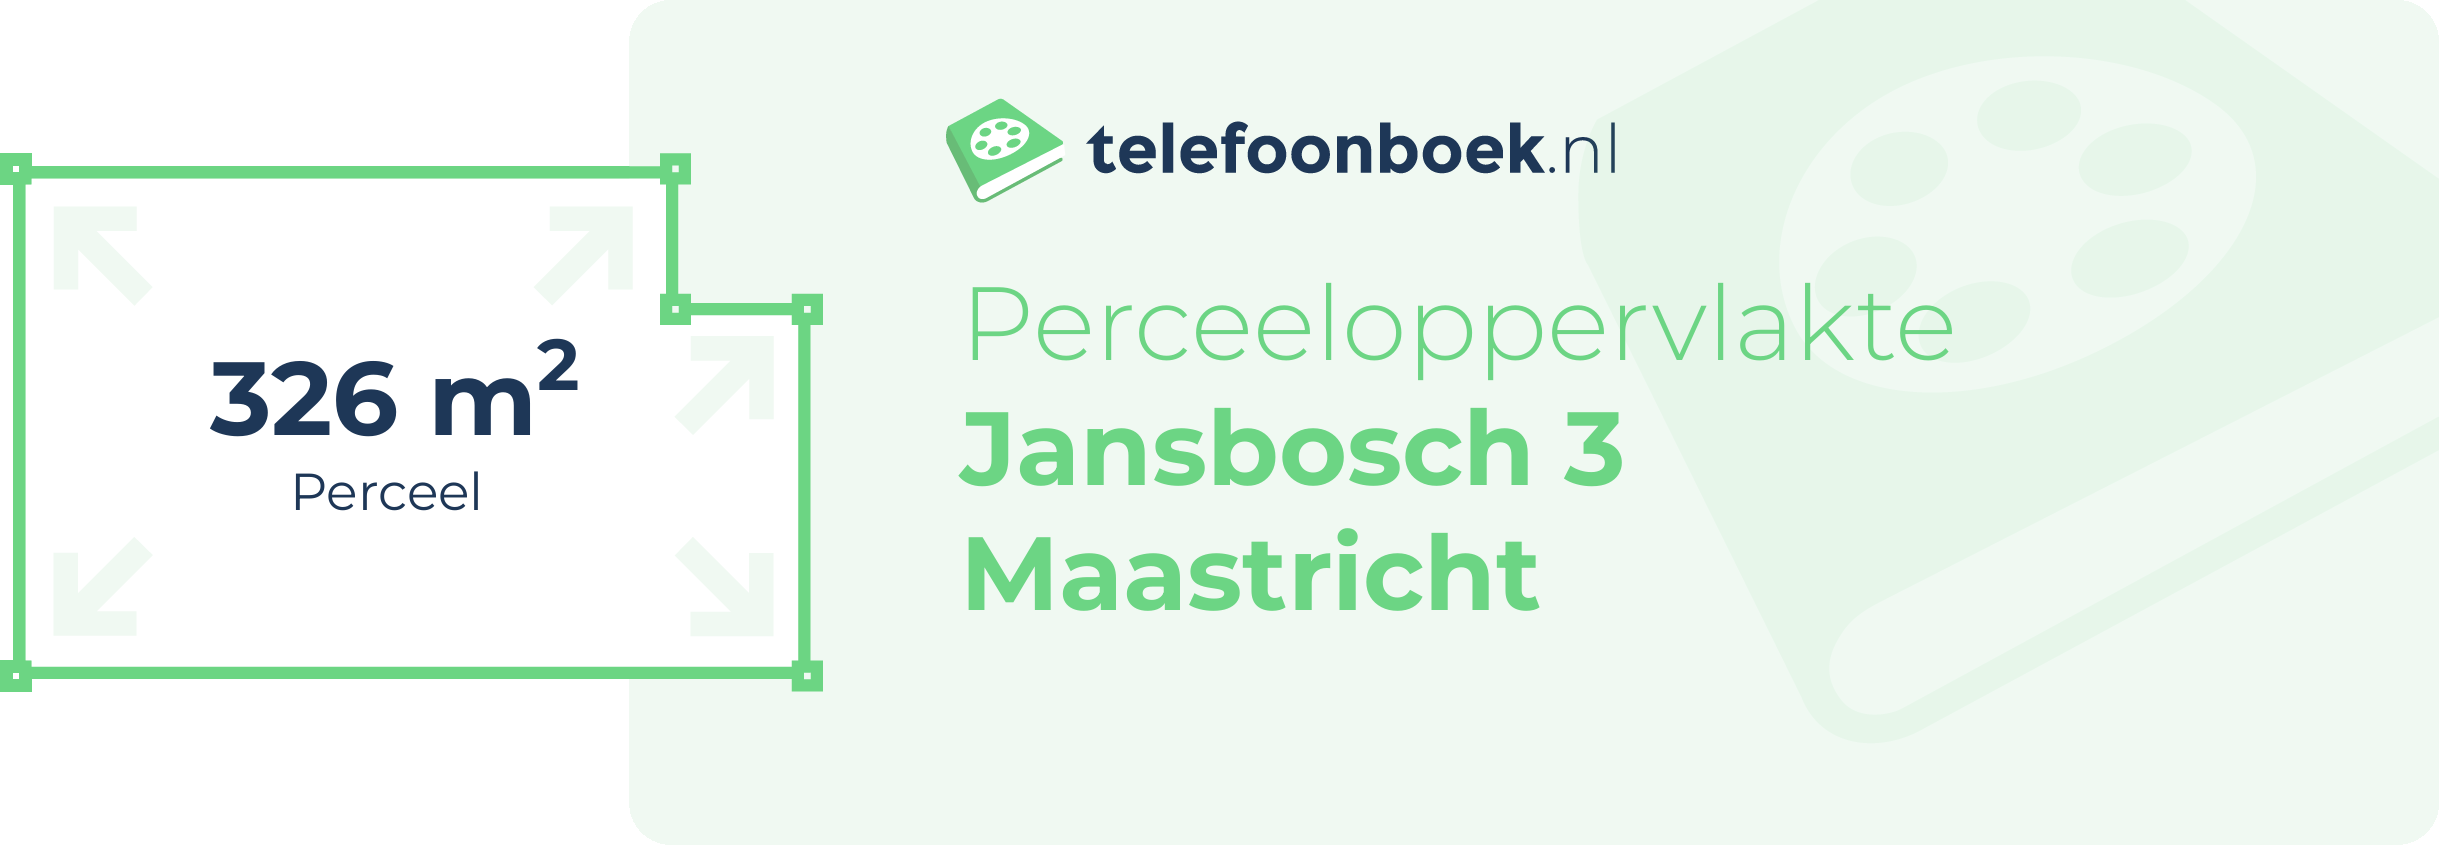 Perceeloppervlakte Jansbosch 3 Maastricht